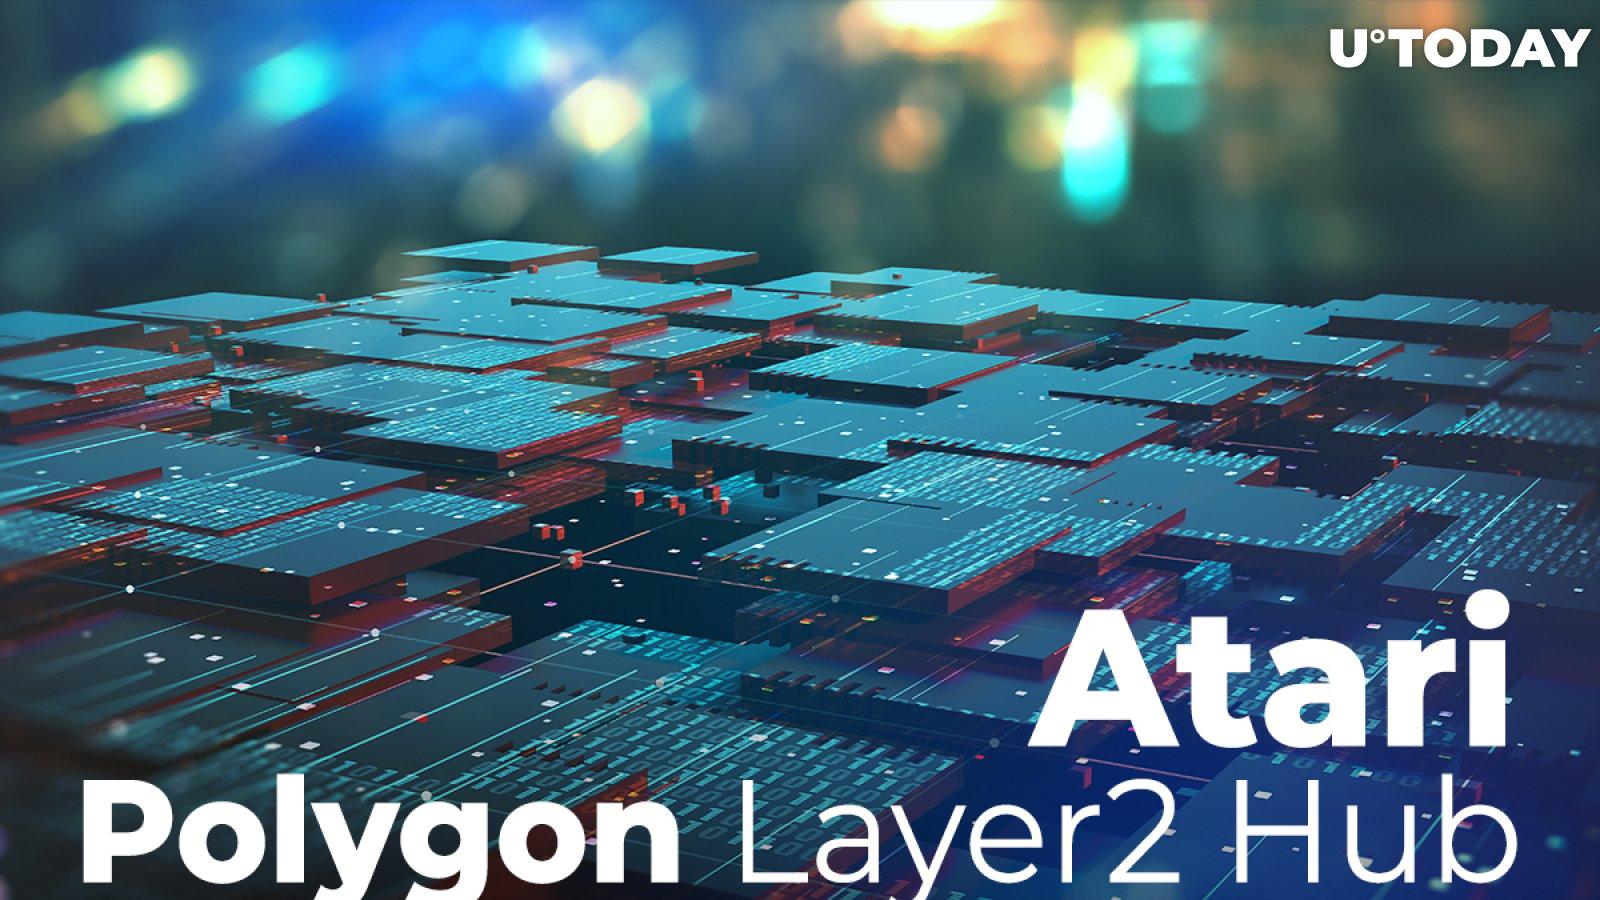 Polygon Layer 2 Hub Will Assist Atari in Its NFT Bet